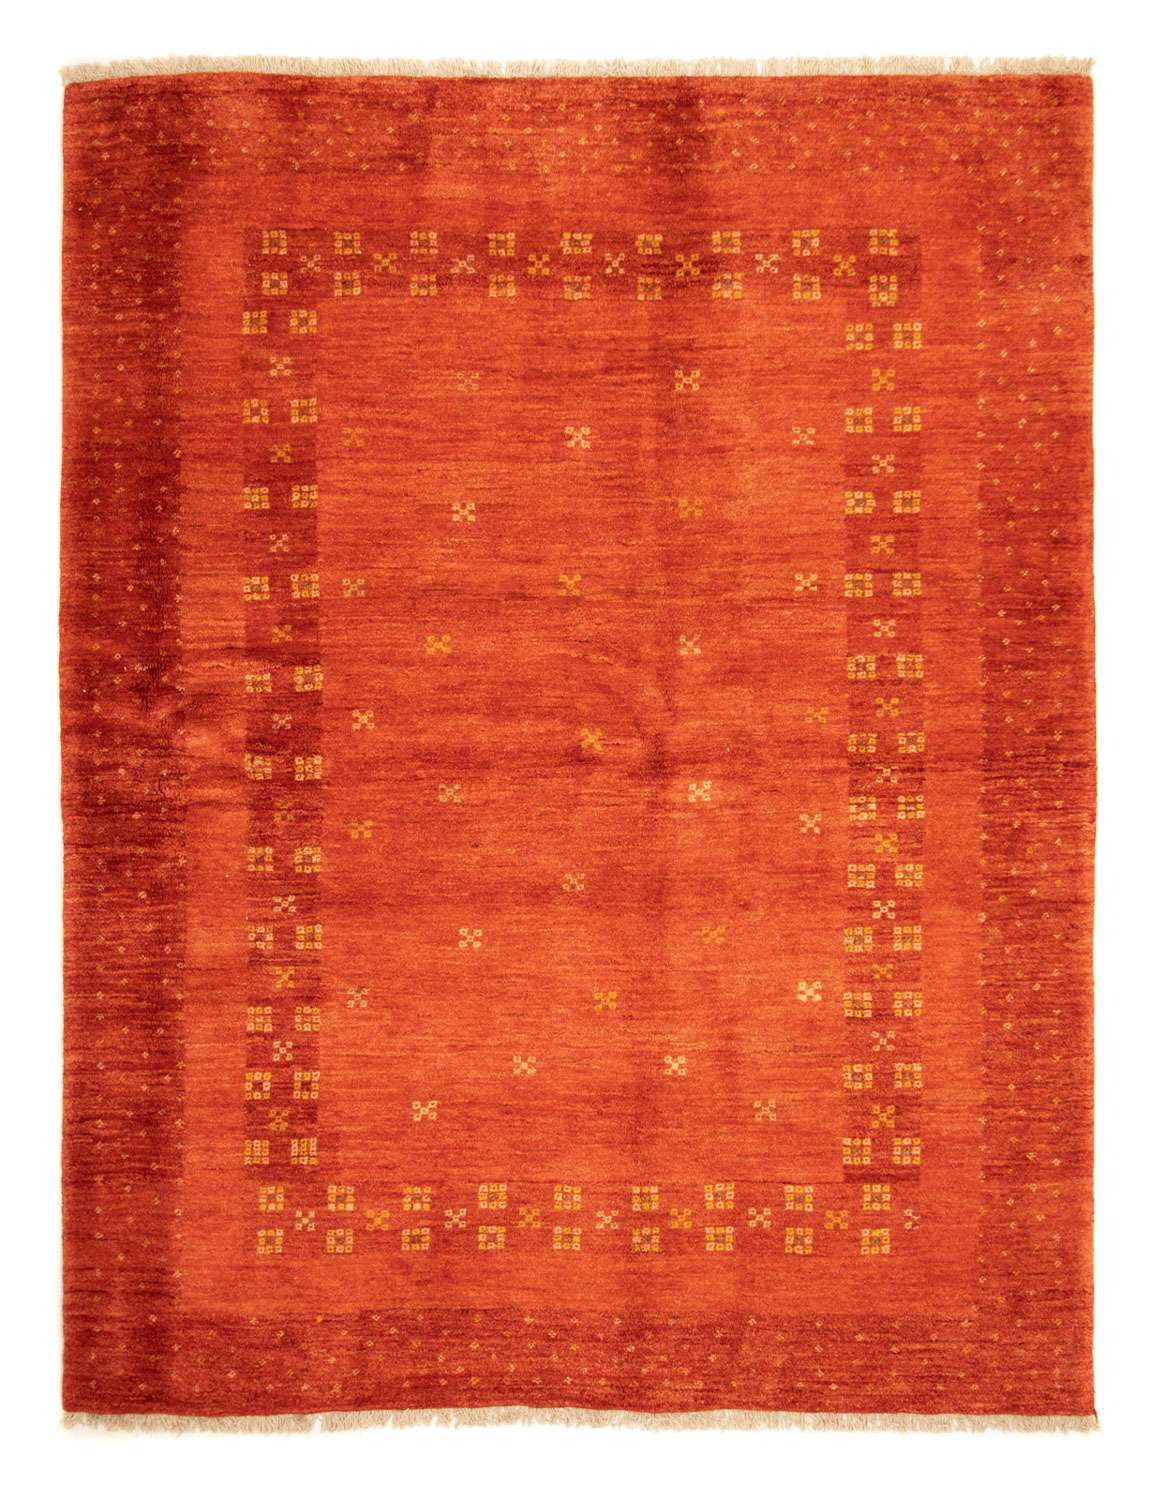 Gabbeh tapijt - Perzisch - 226 x 177 cm - rood